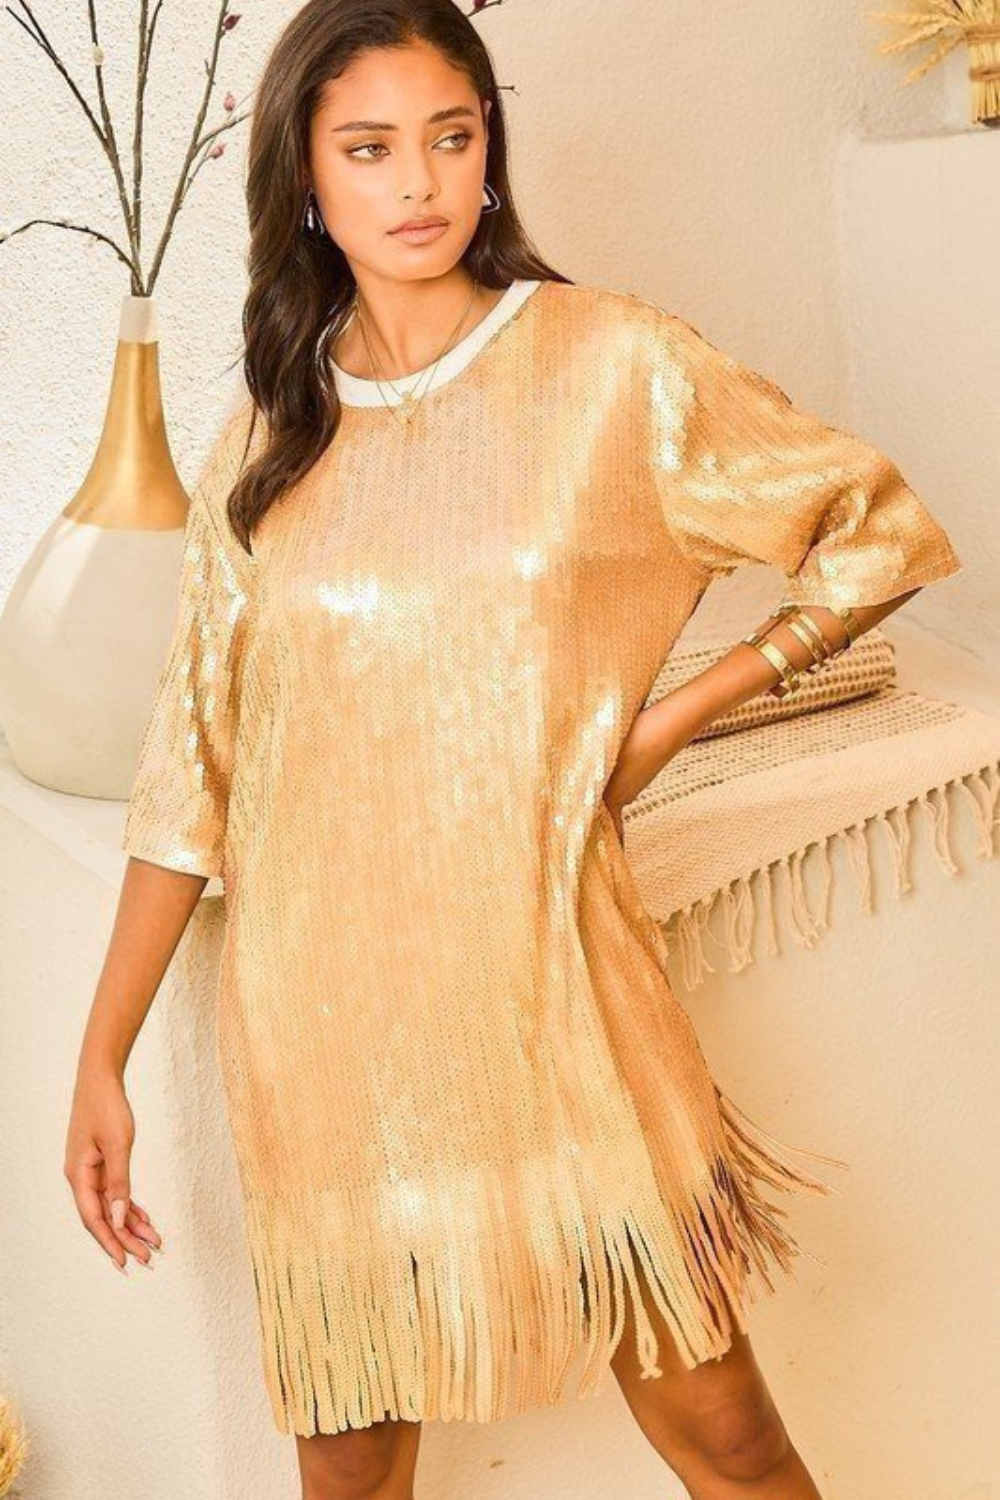 Solid Gold Sparkle Cut Fringe Dress – Les Tout Petits